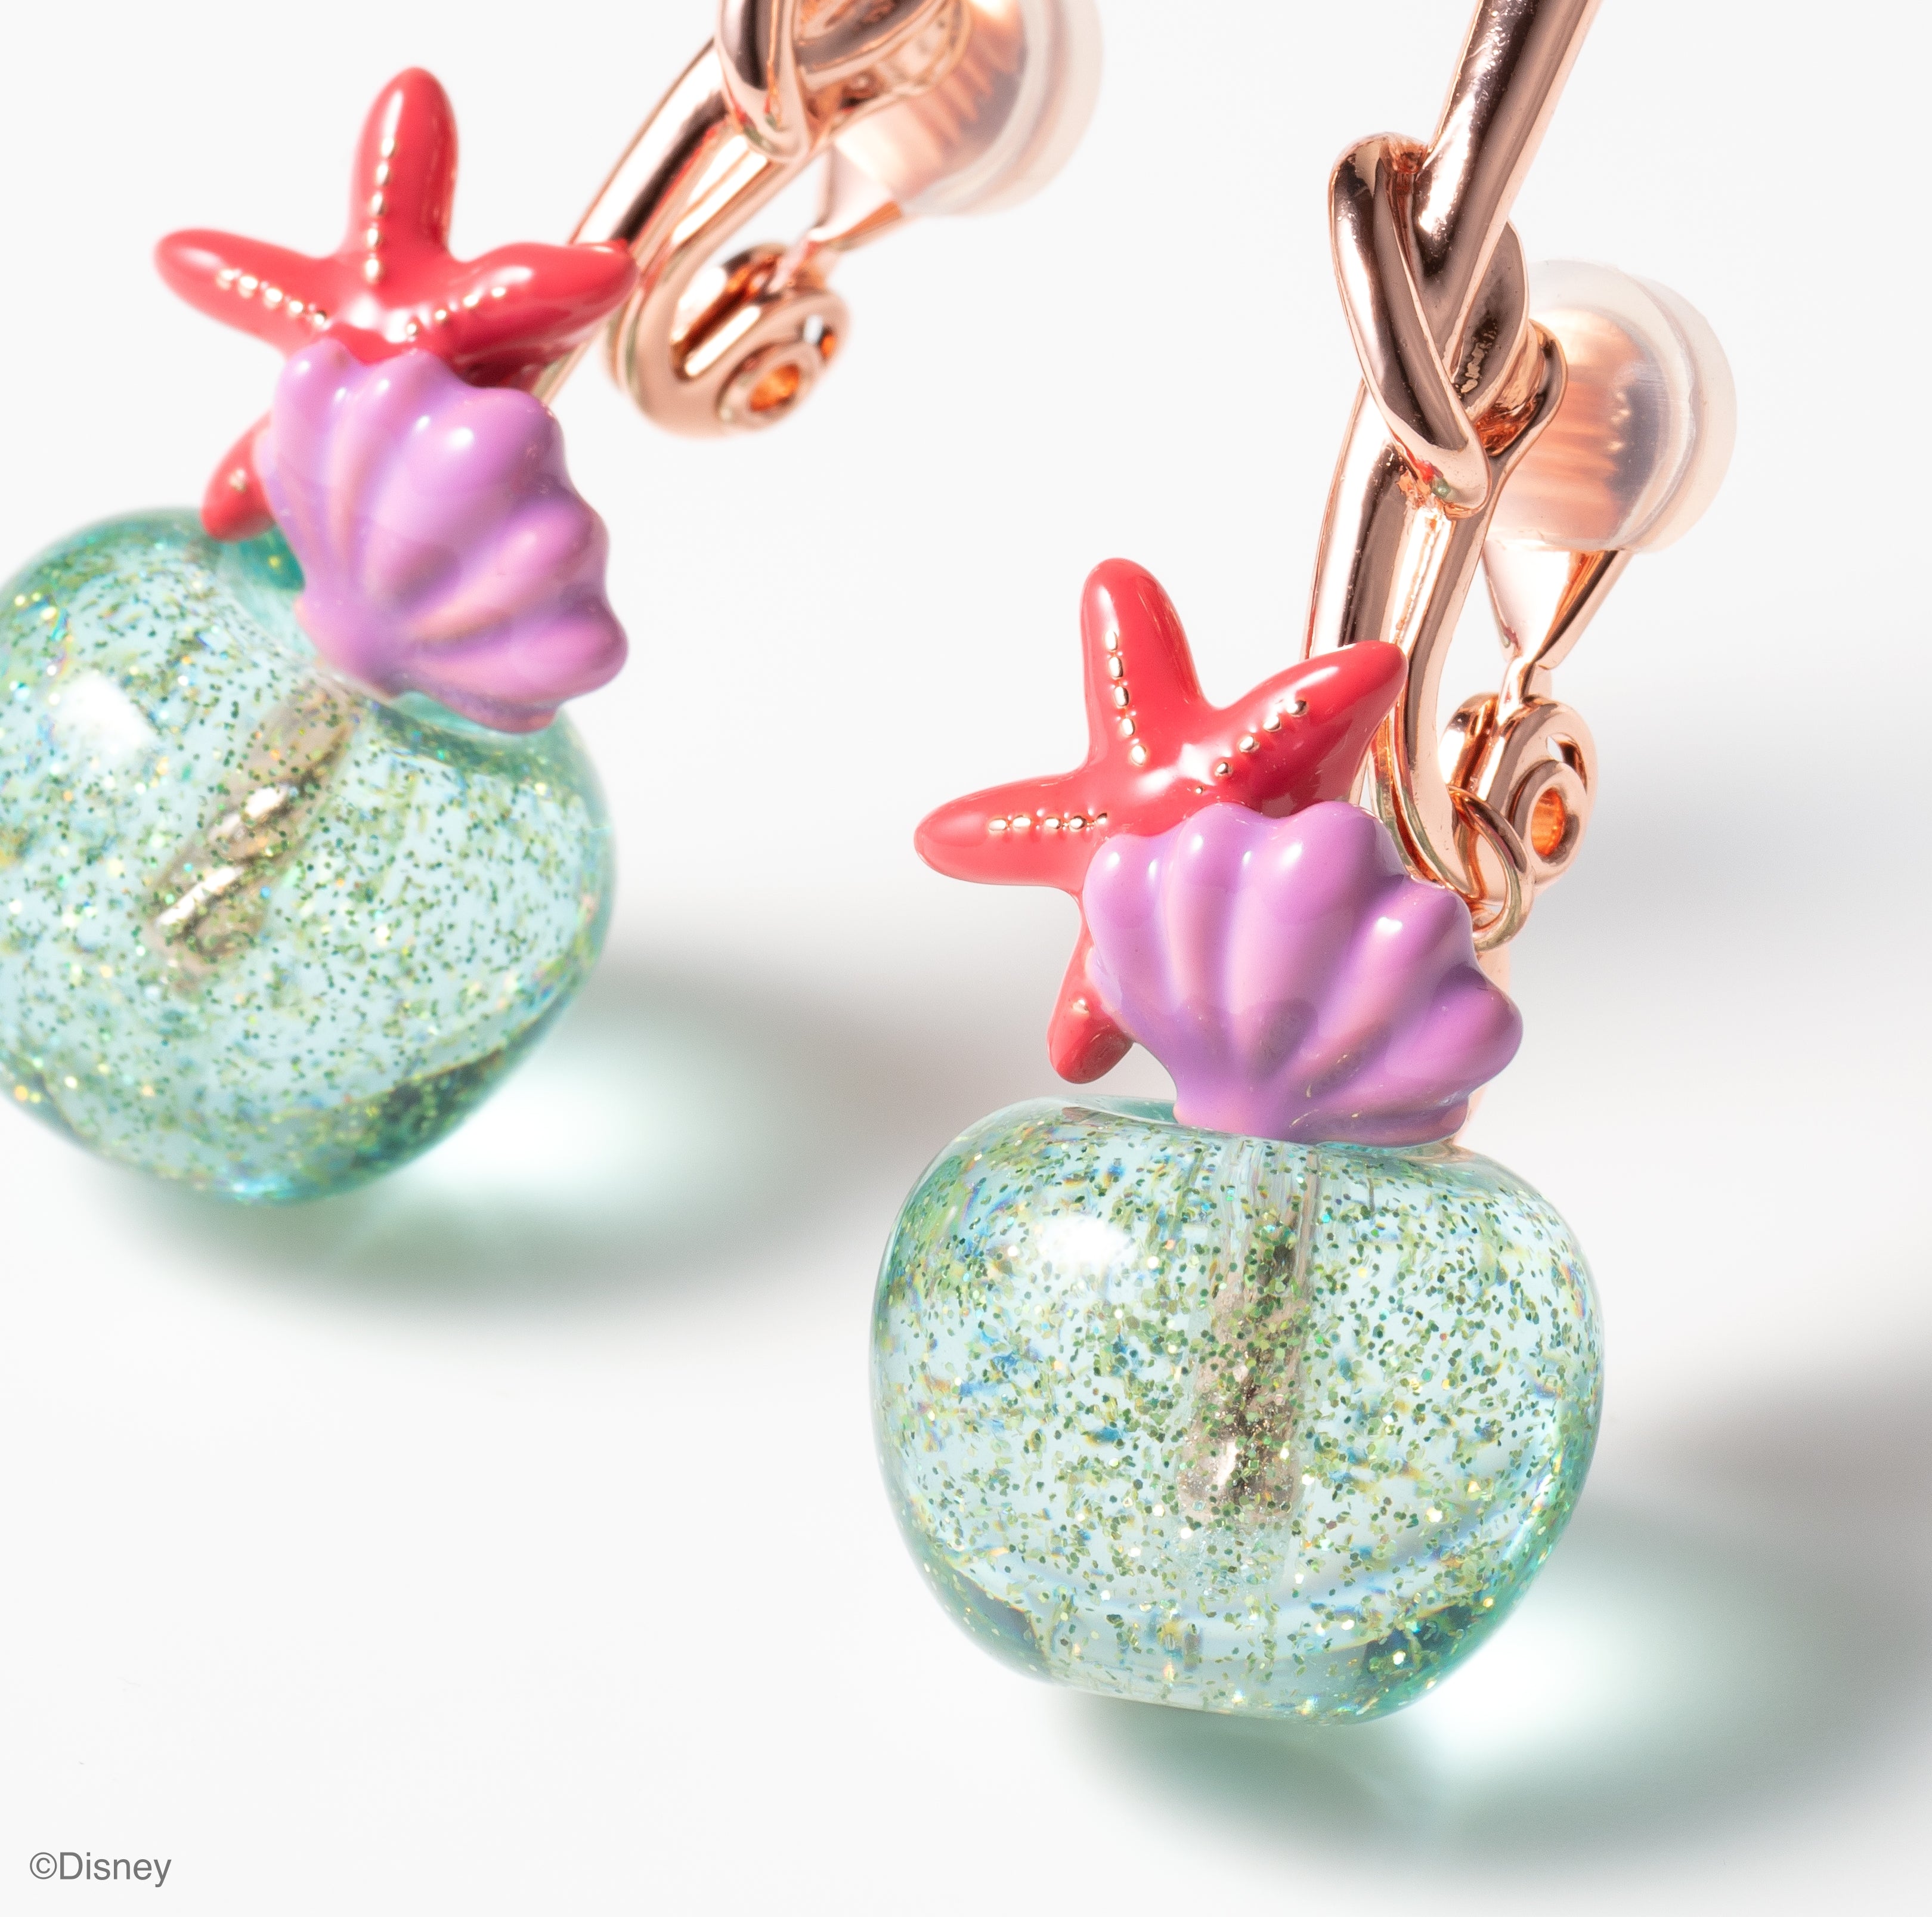 [Ariel] Cherry clip on earrings